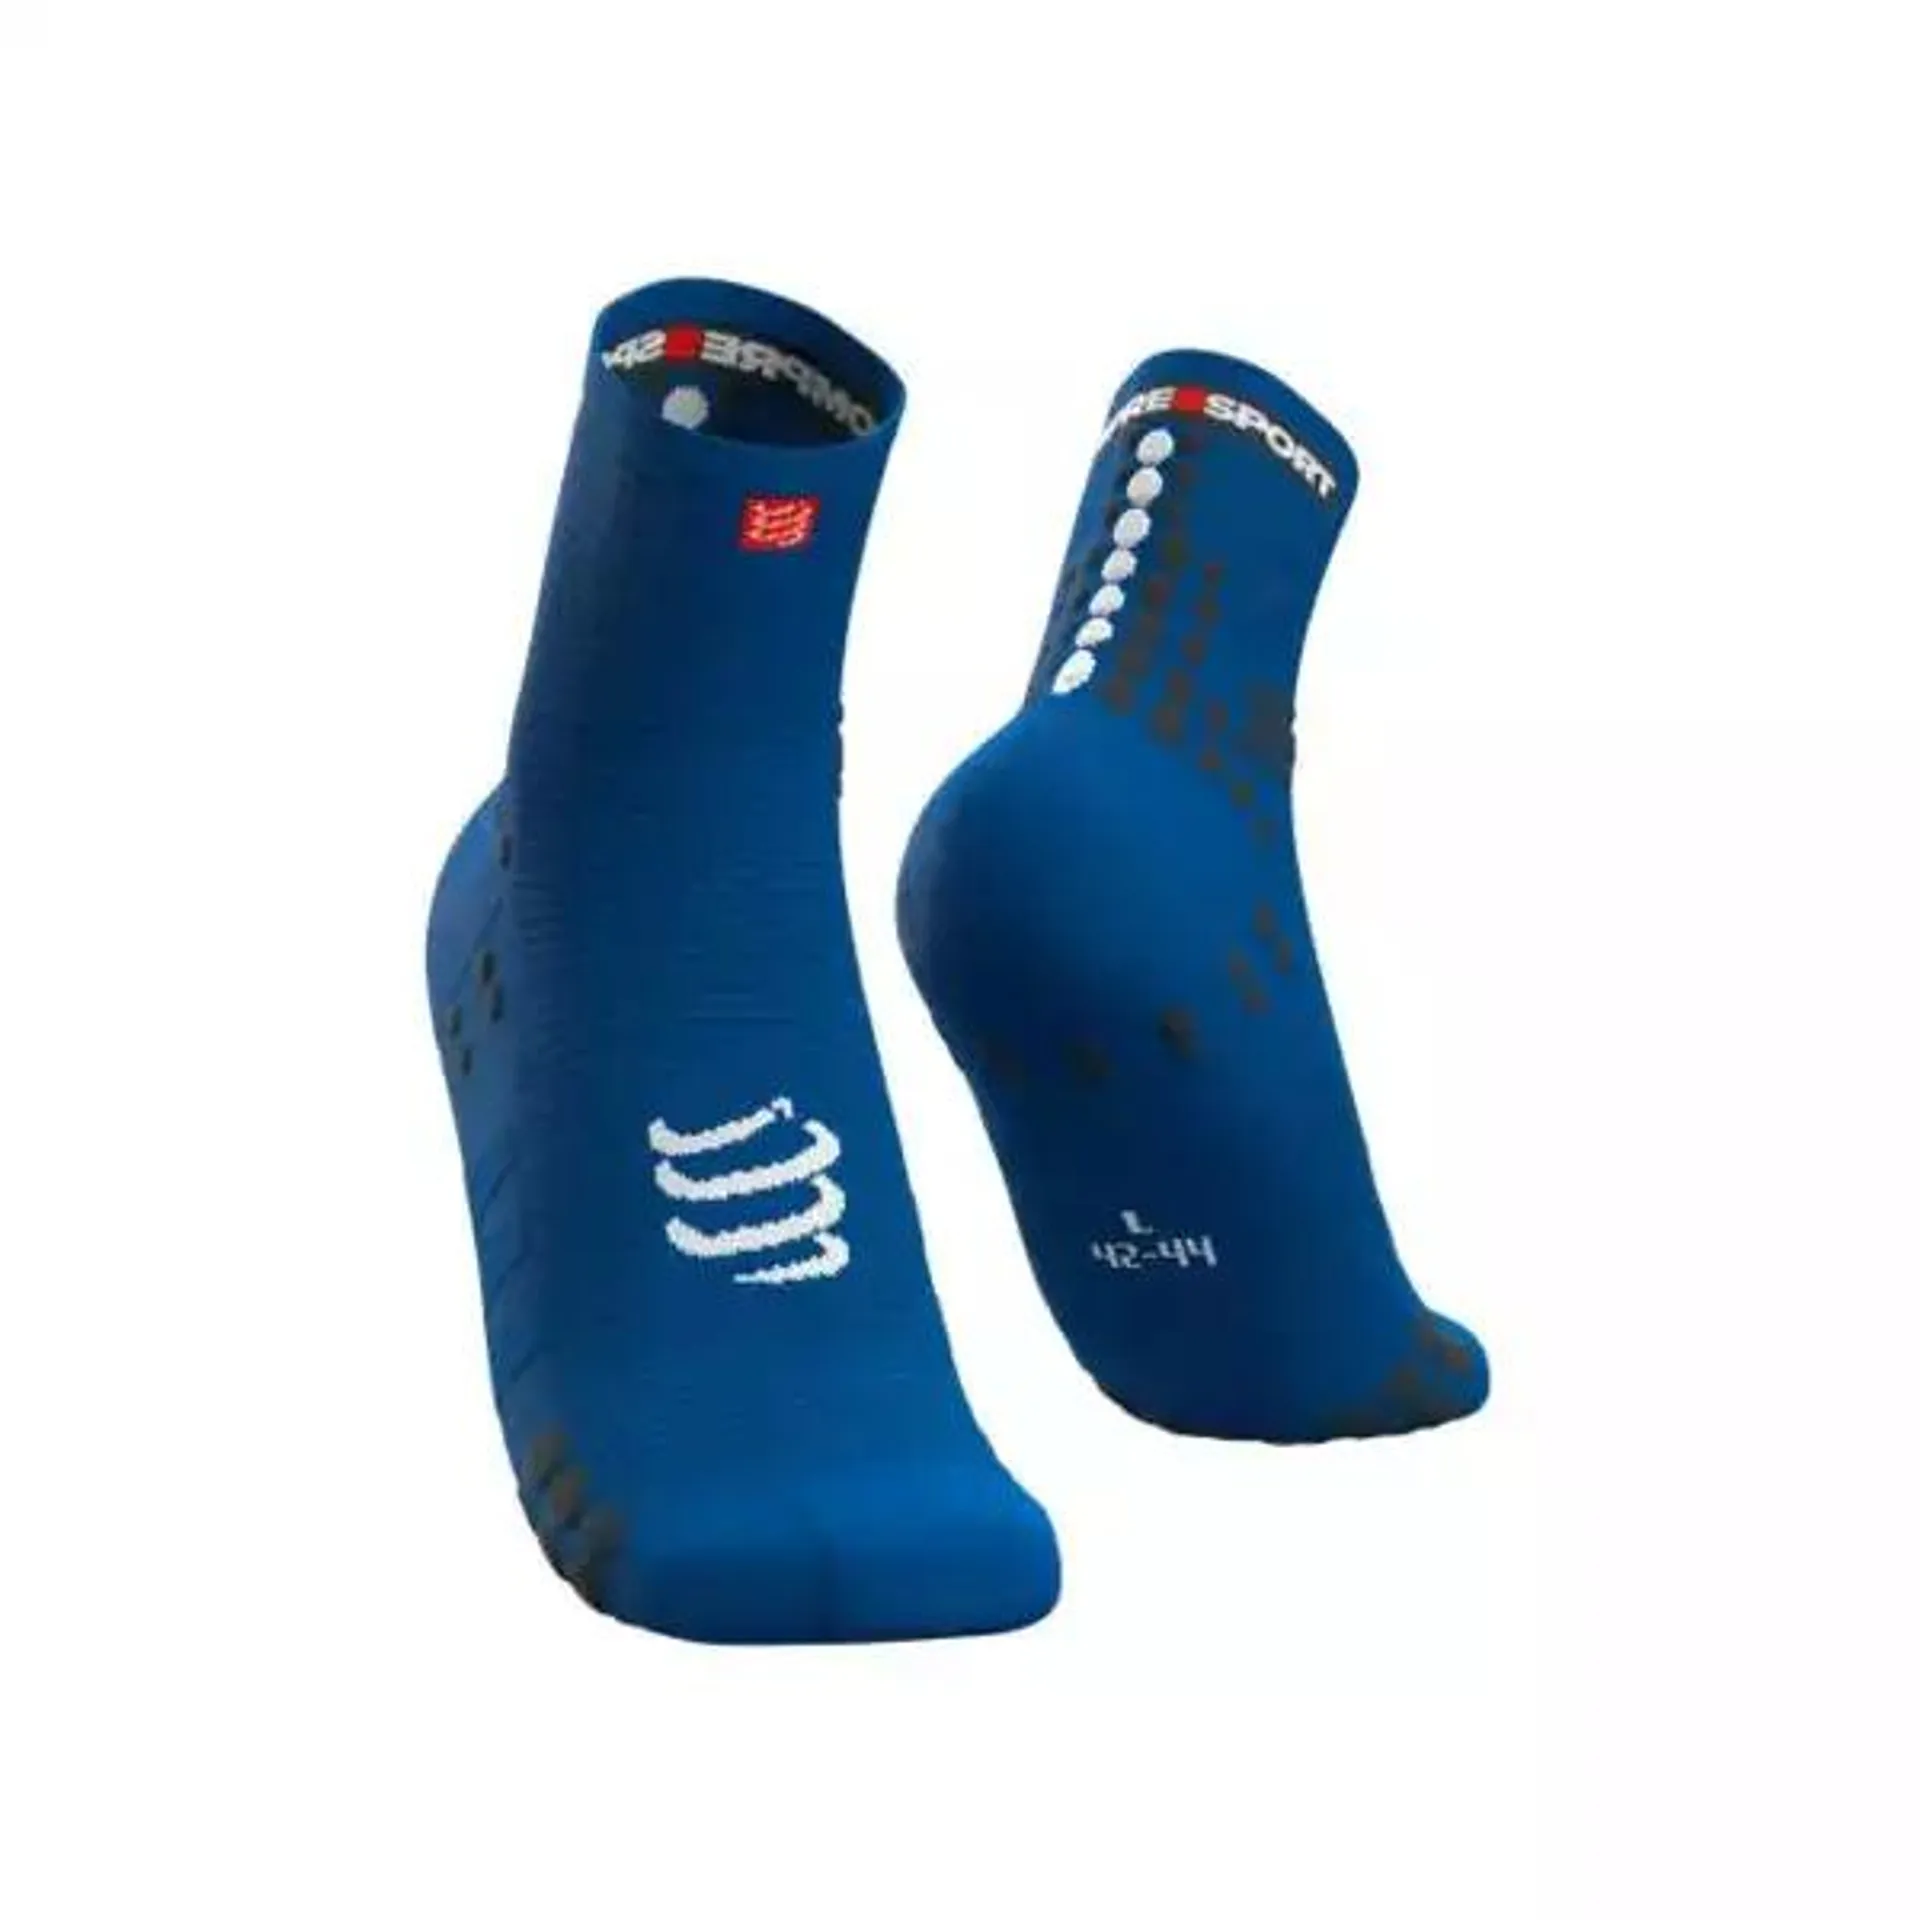 Pro Racing socks V3.0 Run high